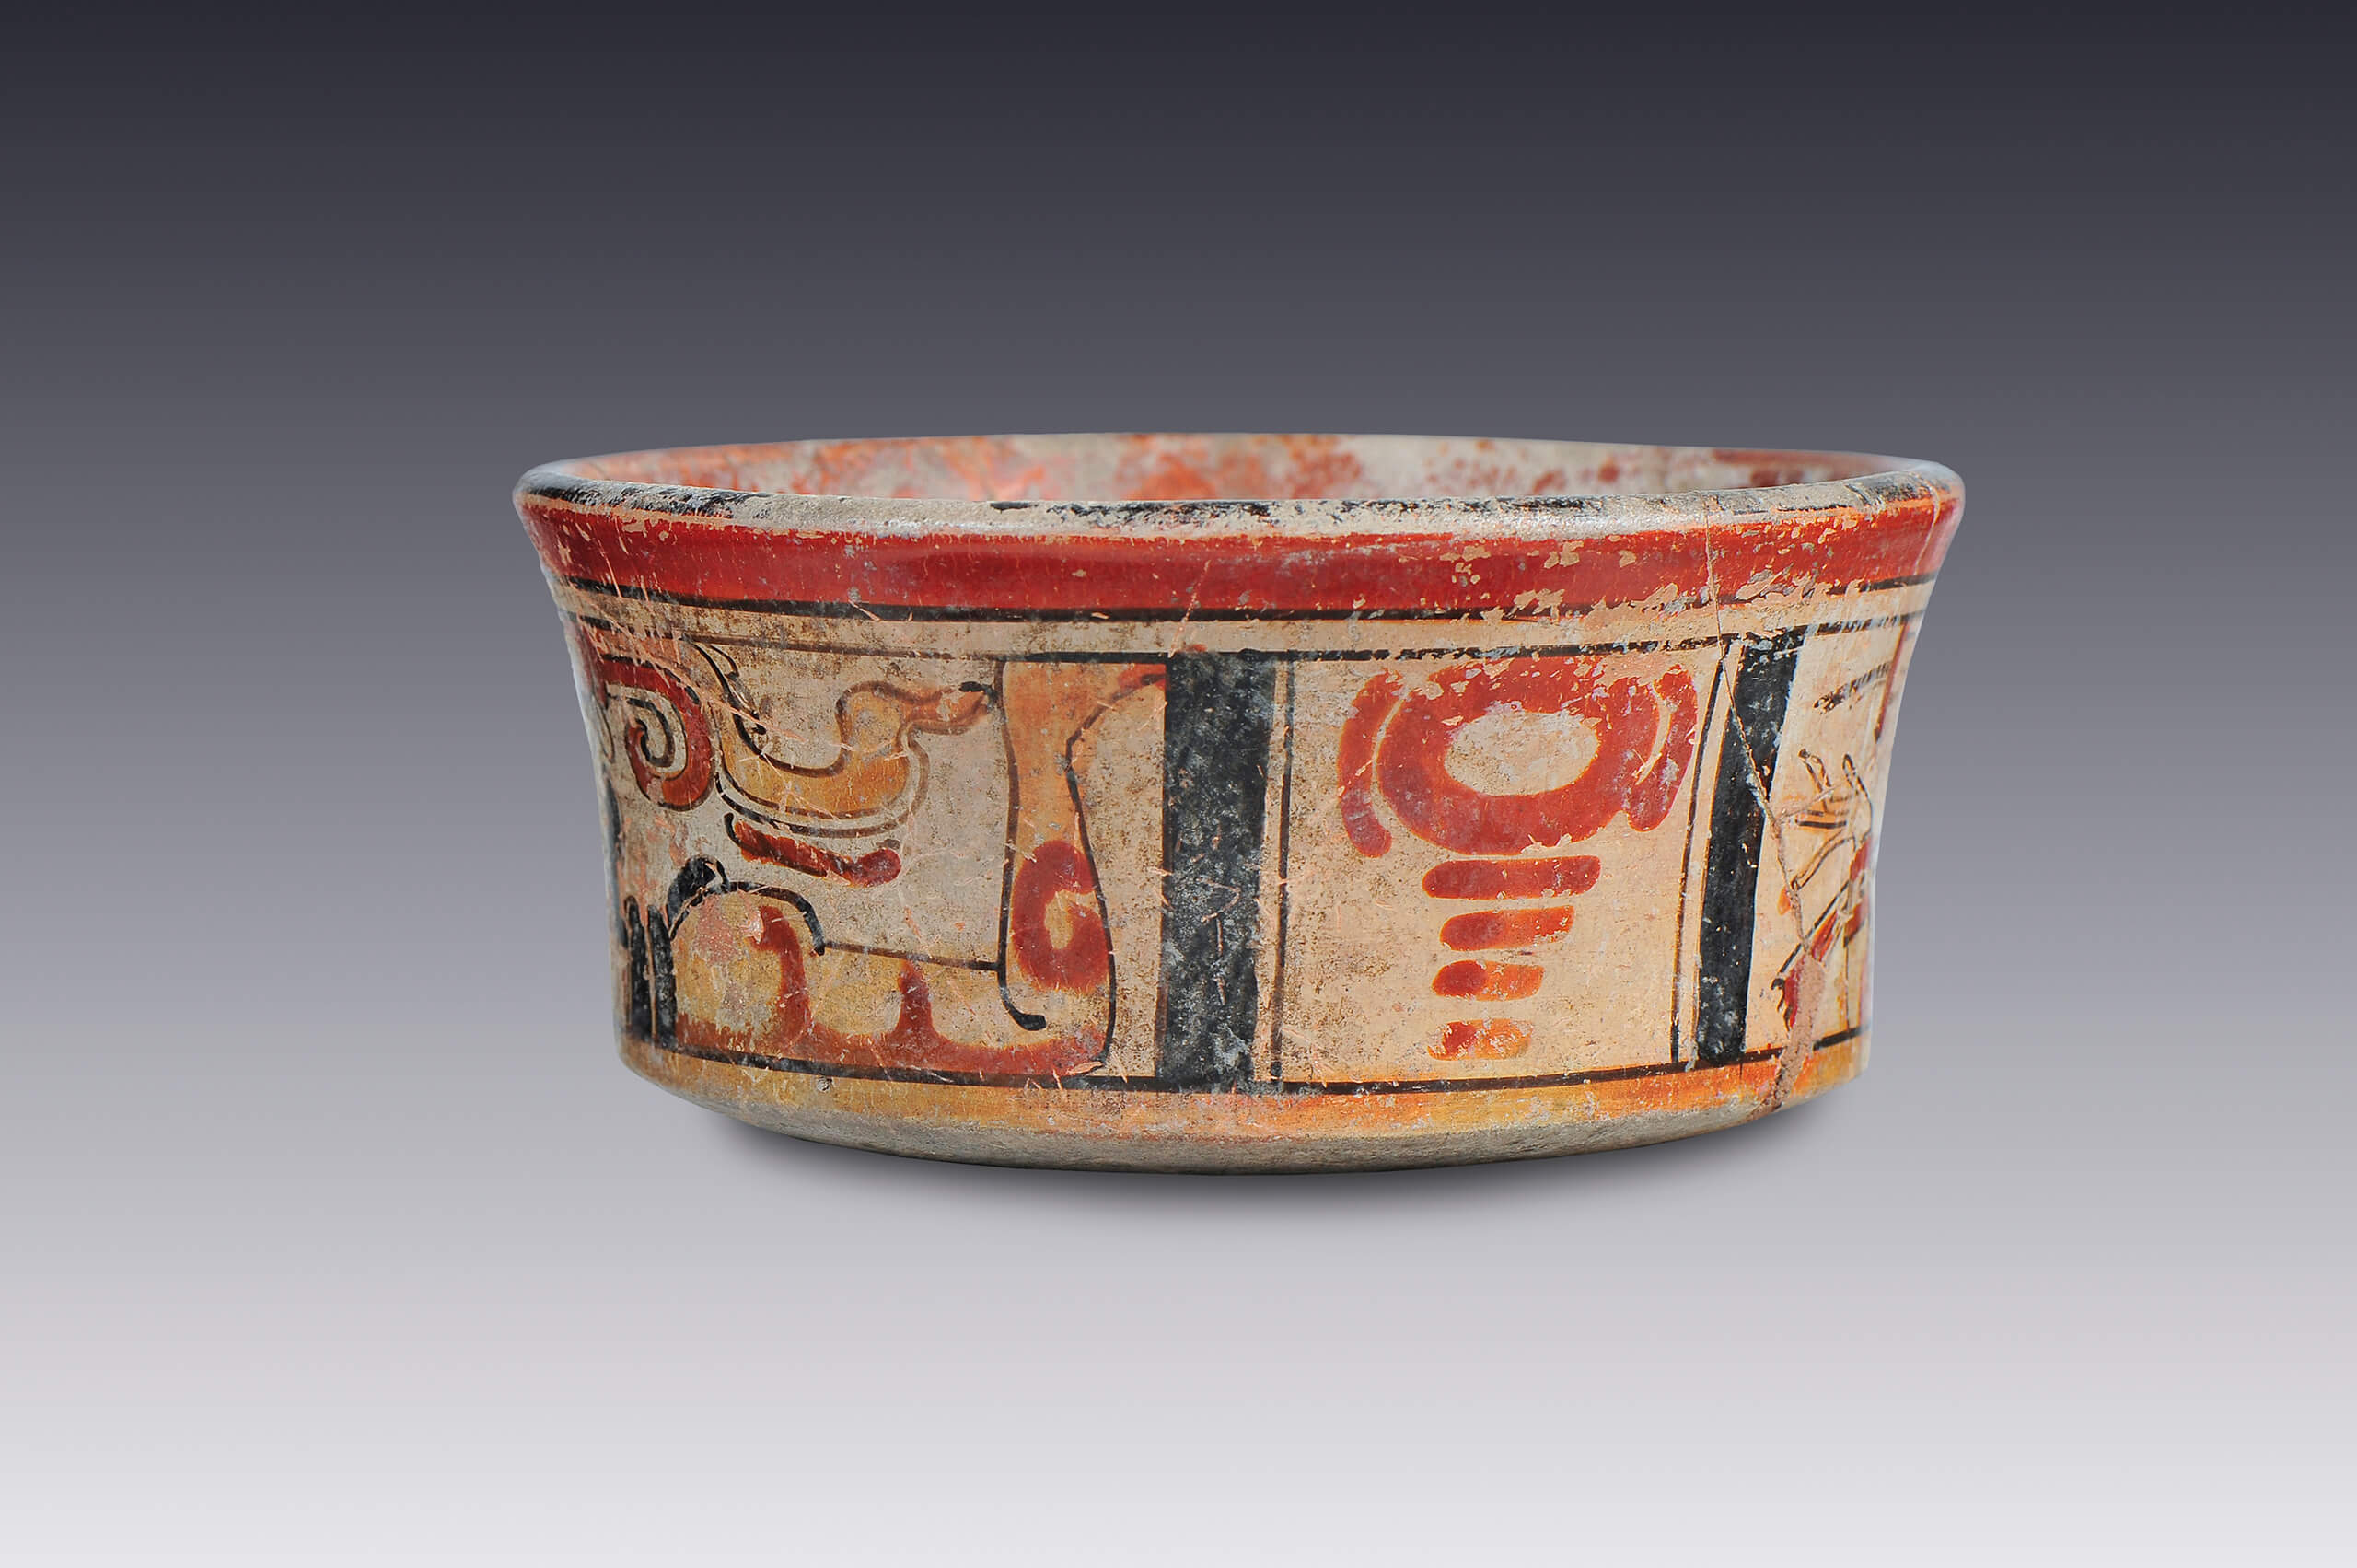 Vaso ceremonial | El México antiguo. Salas de Arte Prehispánico | Museo Amparo, Puebla